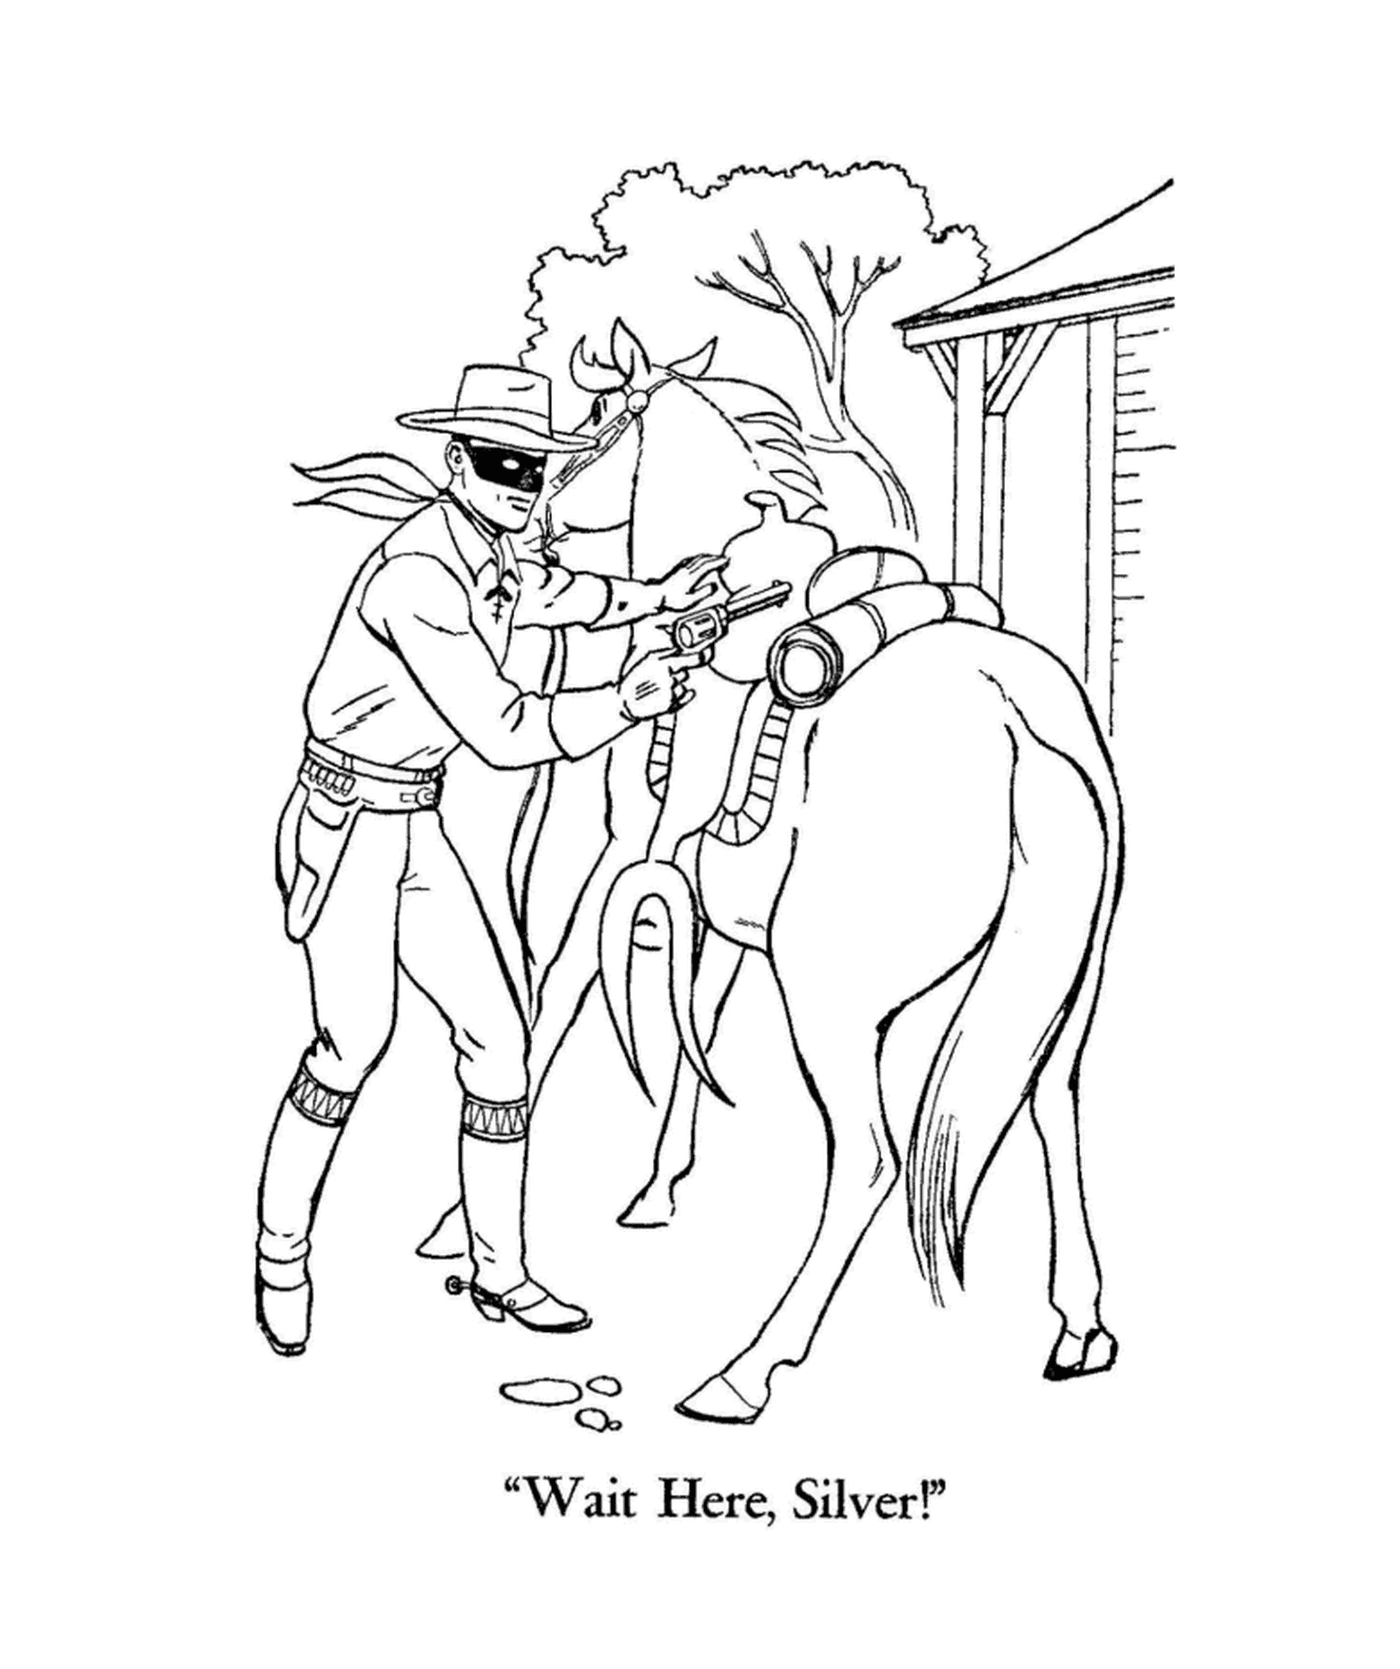 zorro avec un fusil et son cheval